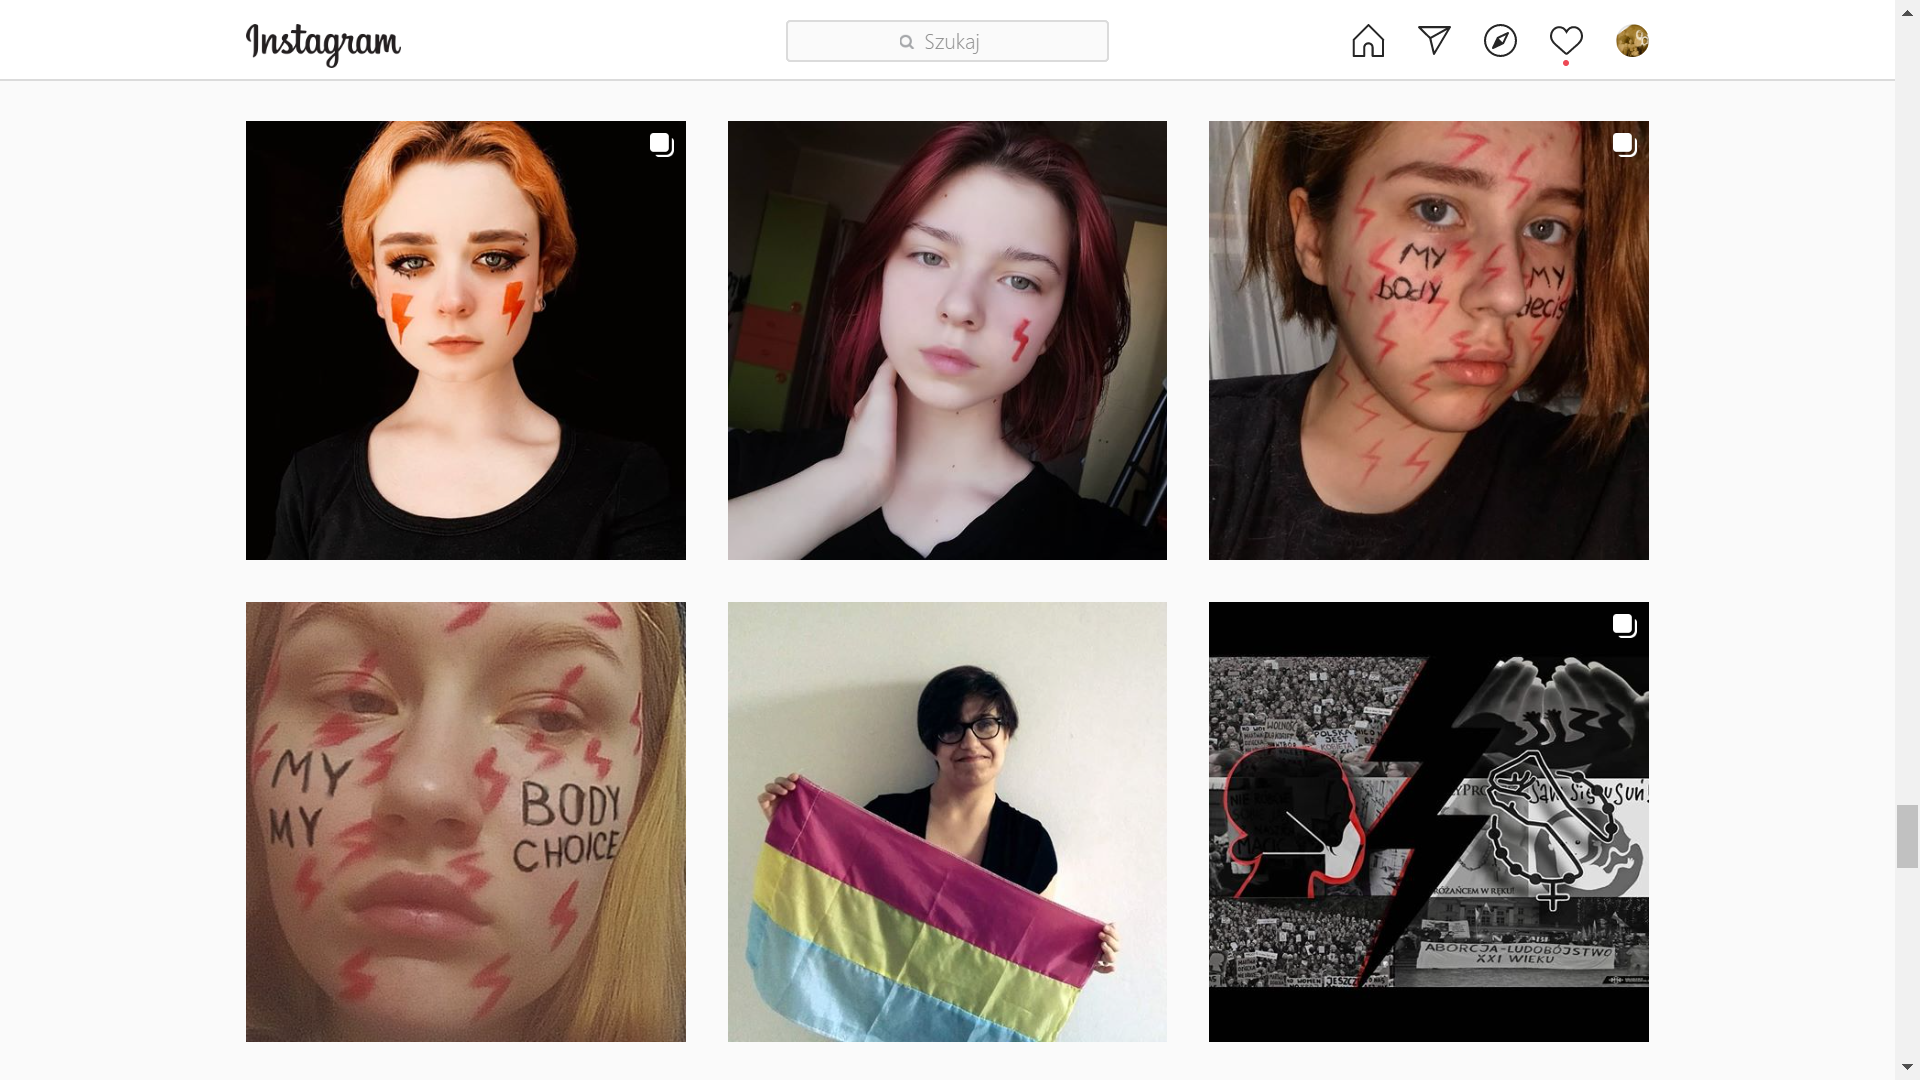  Zrzut ekranu serwisu Instagram po wyszukaniu #czarnyprotest. Wyświetla się sześć obrazków. Cztery zdjęcia przedstawiają twarze kobiet, na których narysowane są czerwone pioruny – symbol protestów w obronie prawa do aborcji. 